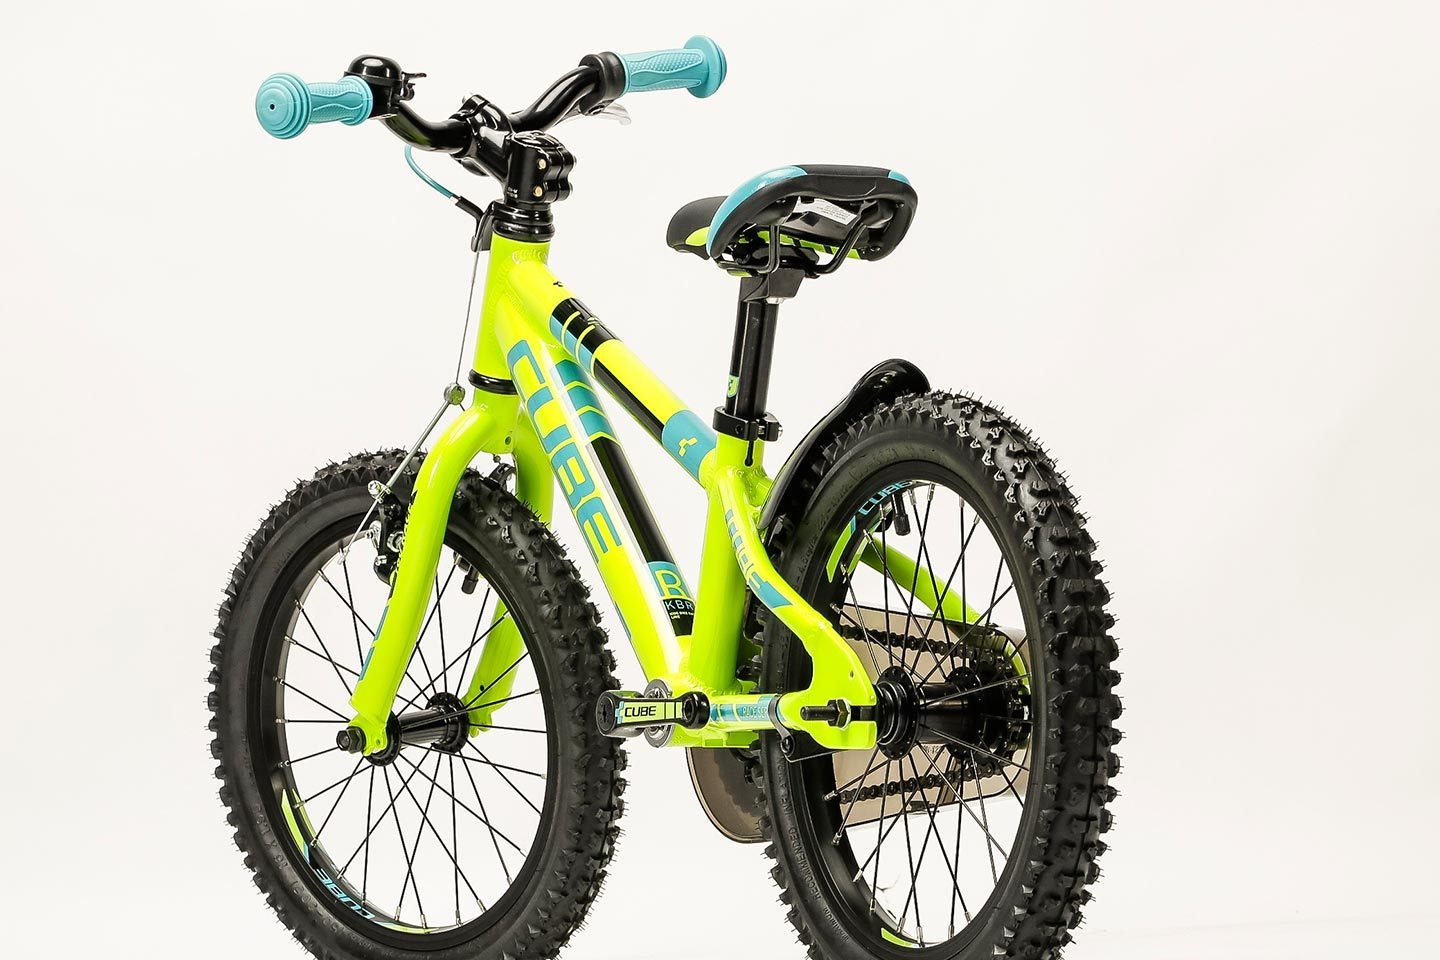 Cube детские. Велосипед Cube Kid 160 girl 2014. Велосипед Cube 160. Cube 160 Kid ростовка. Детский велосипед Cube 160.